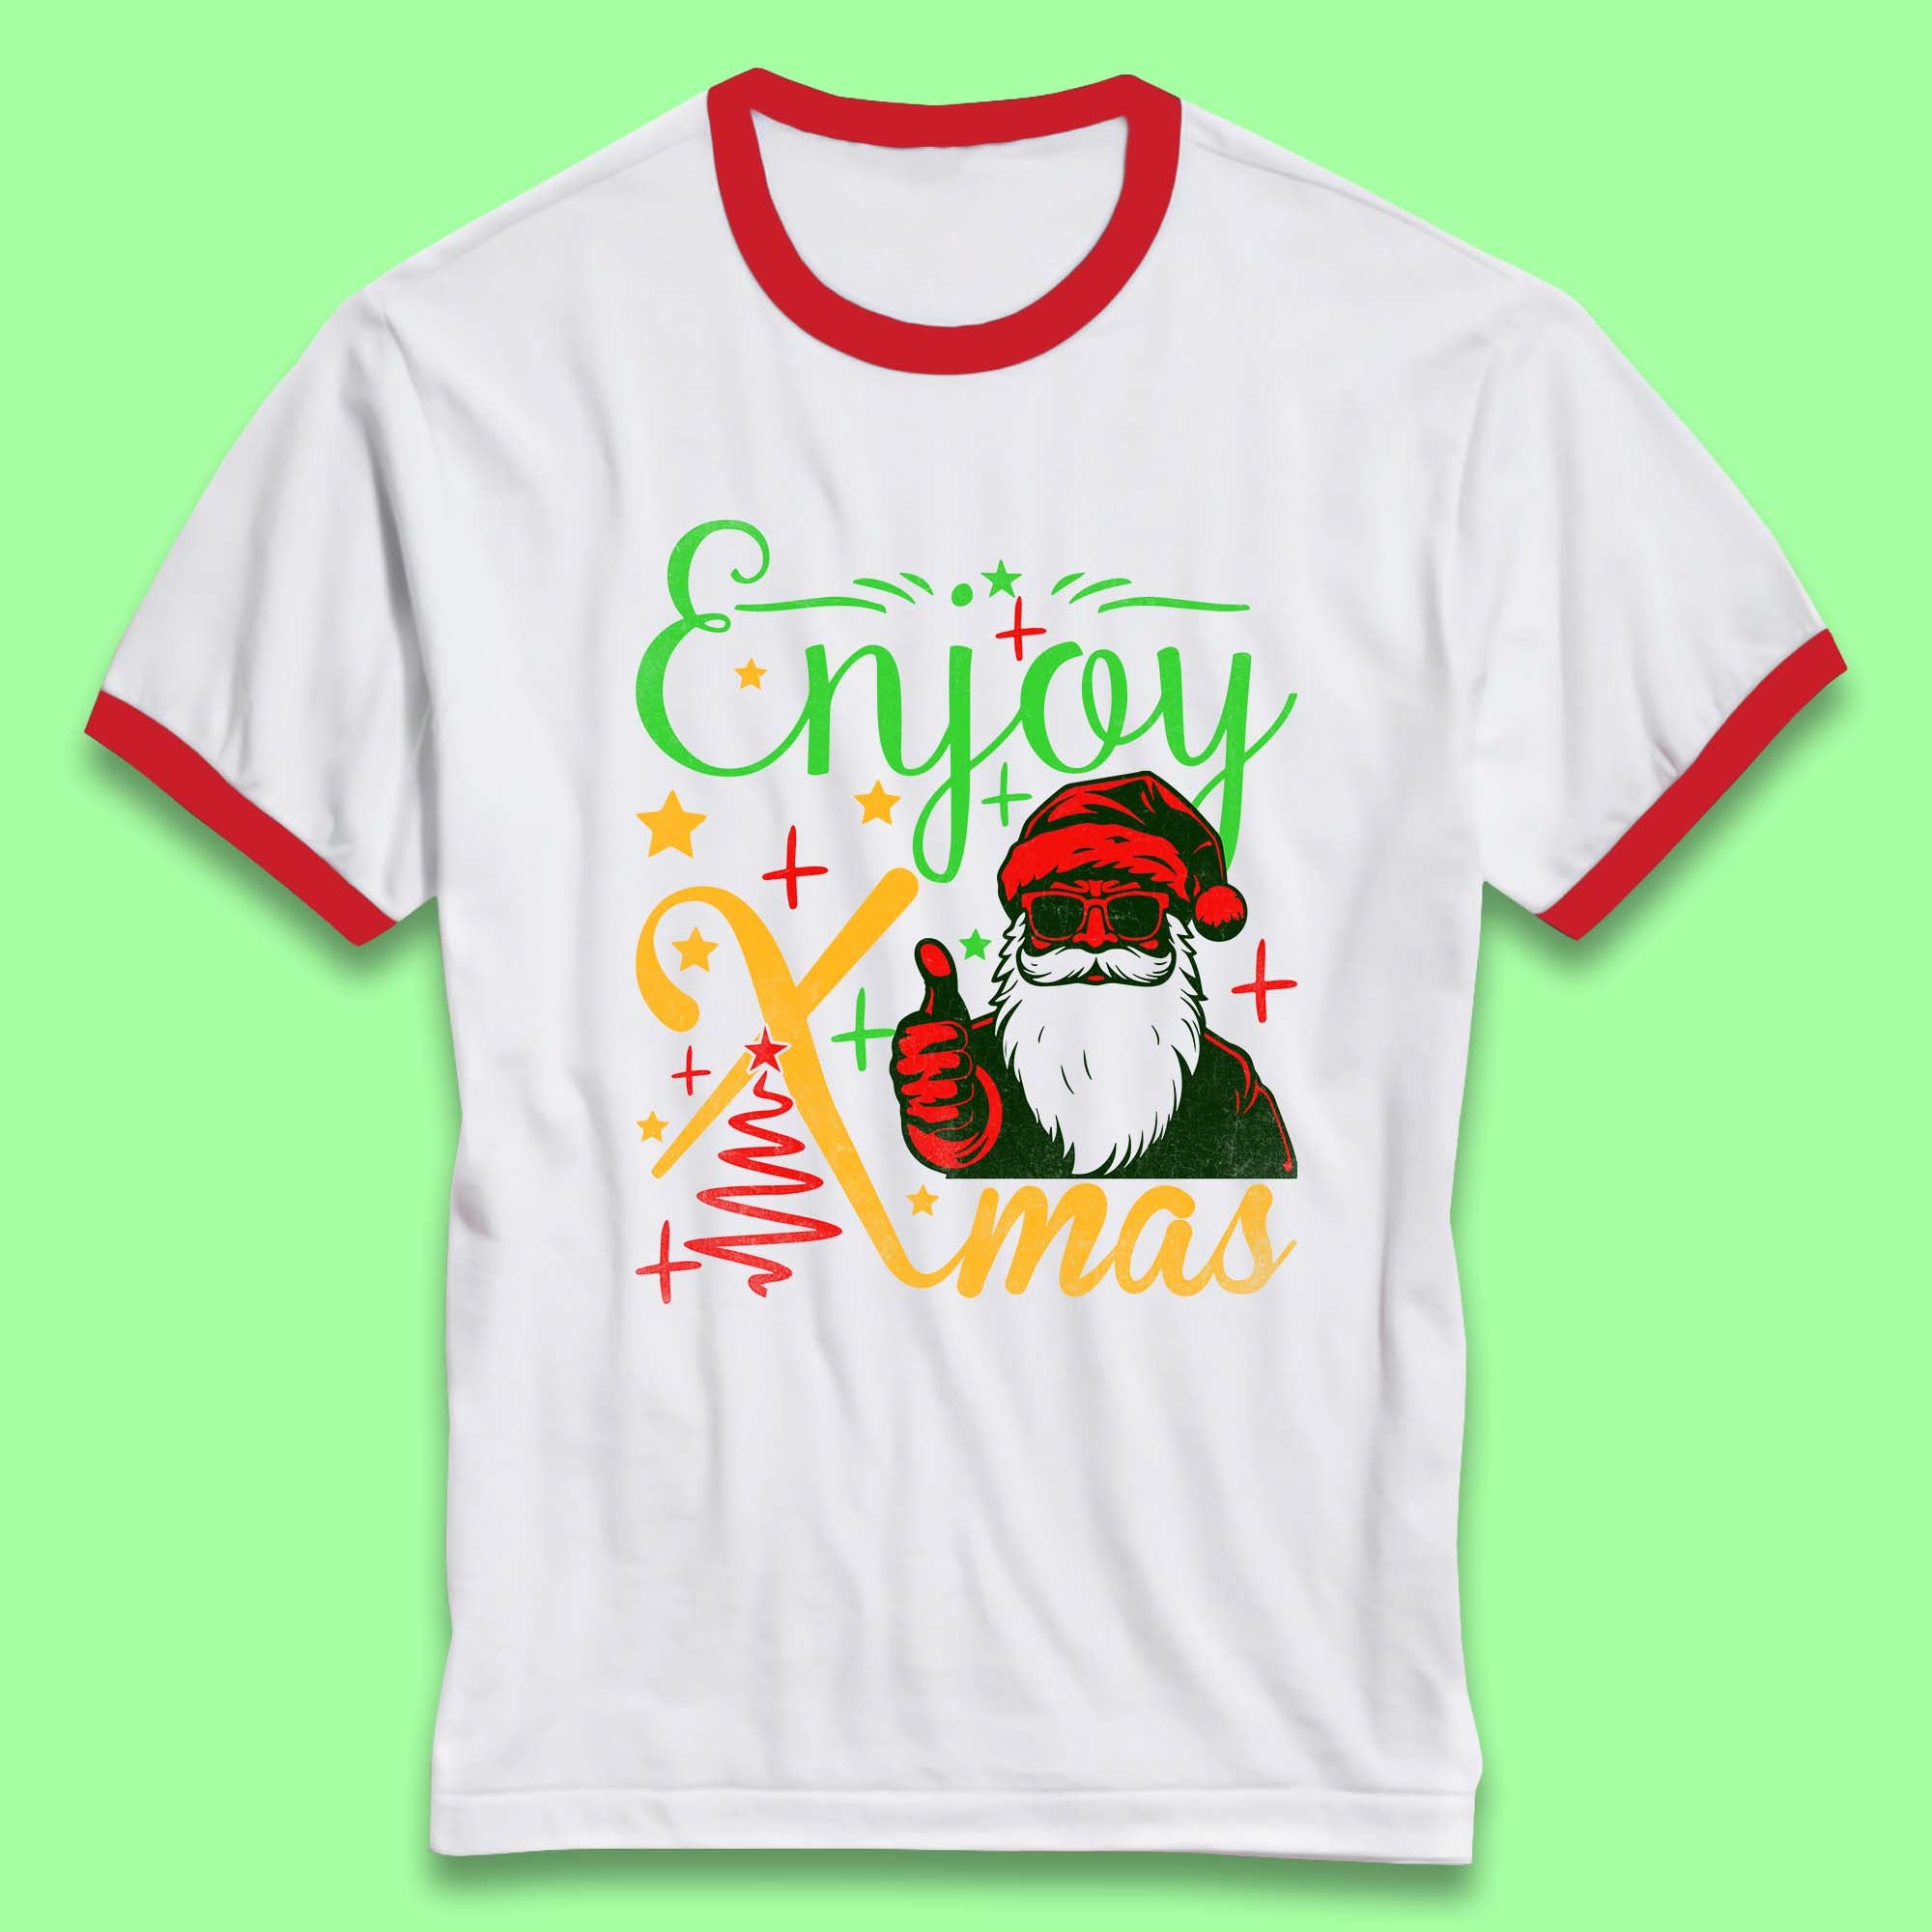 Enjoy Xmas Santa Claus Thumbs Up Merry Christmas Holiday Season Ringer T Shirt